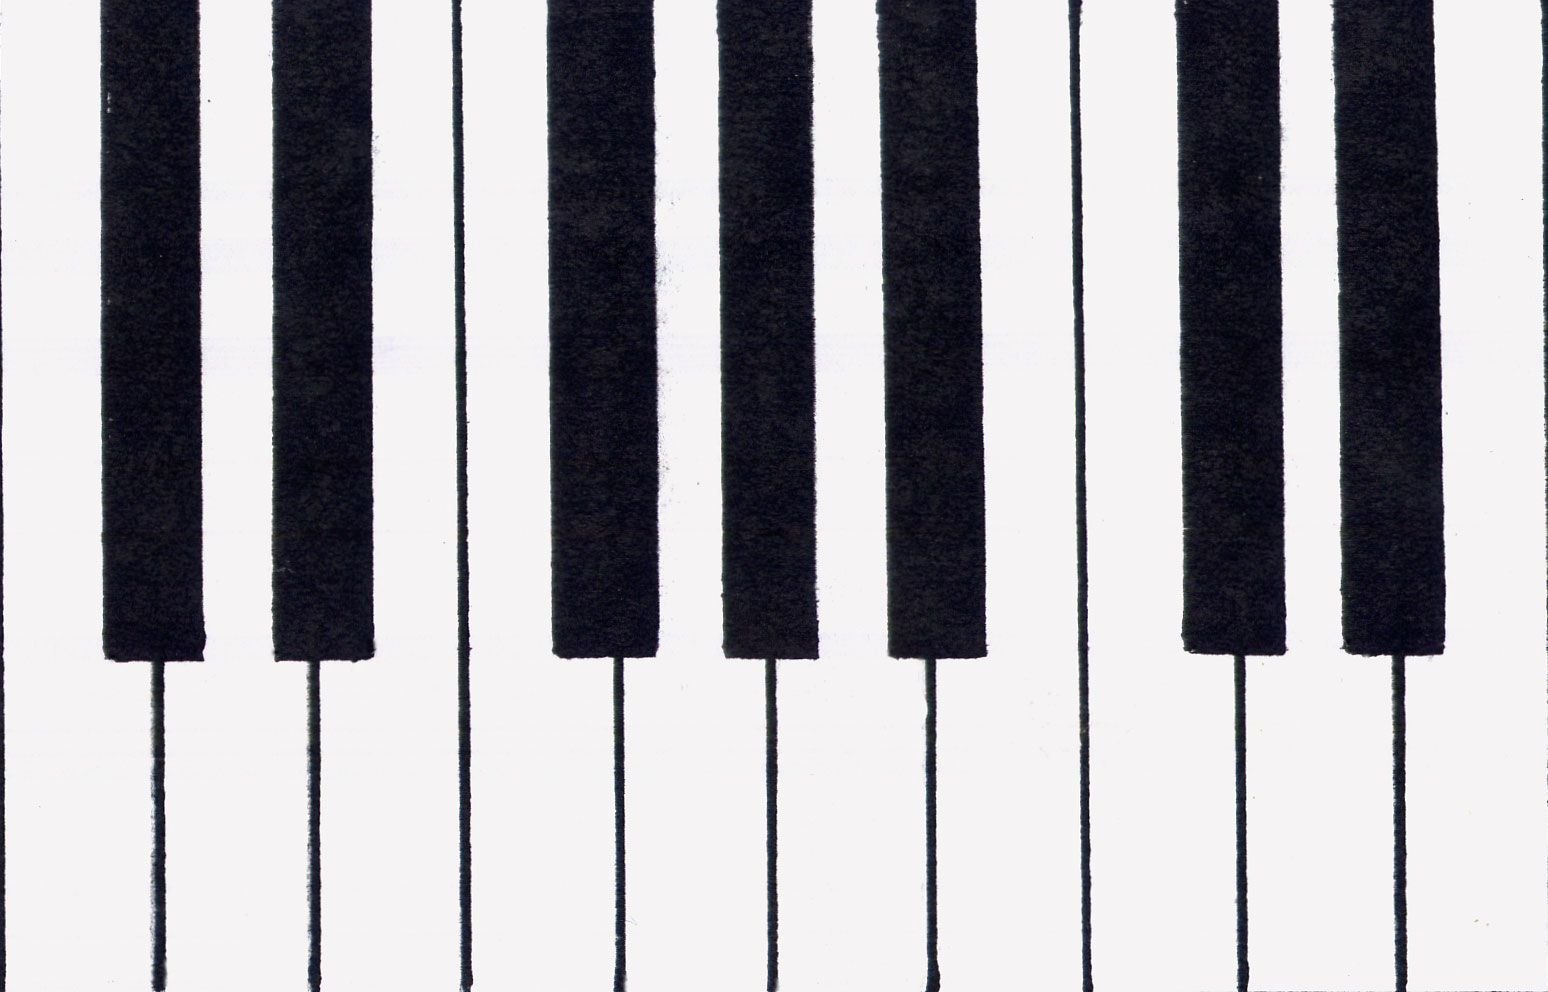 клавиши фортепиано картинки с нотами